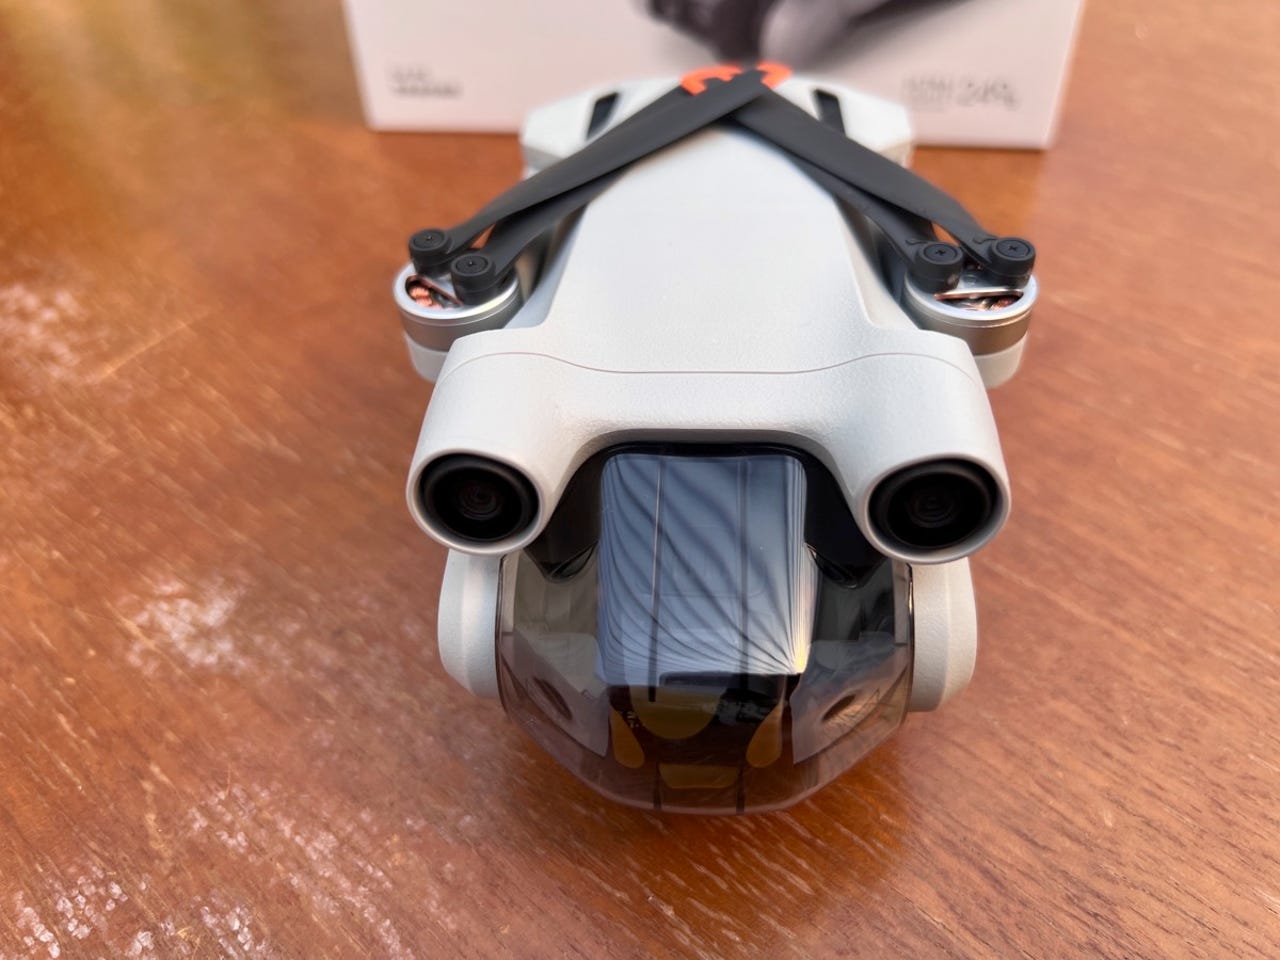 DJI Mini 3 Pro first impressions: A tiny, quiet, flying camera